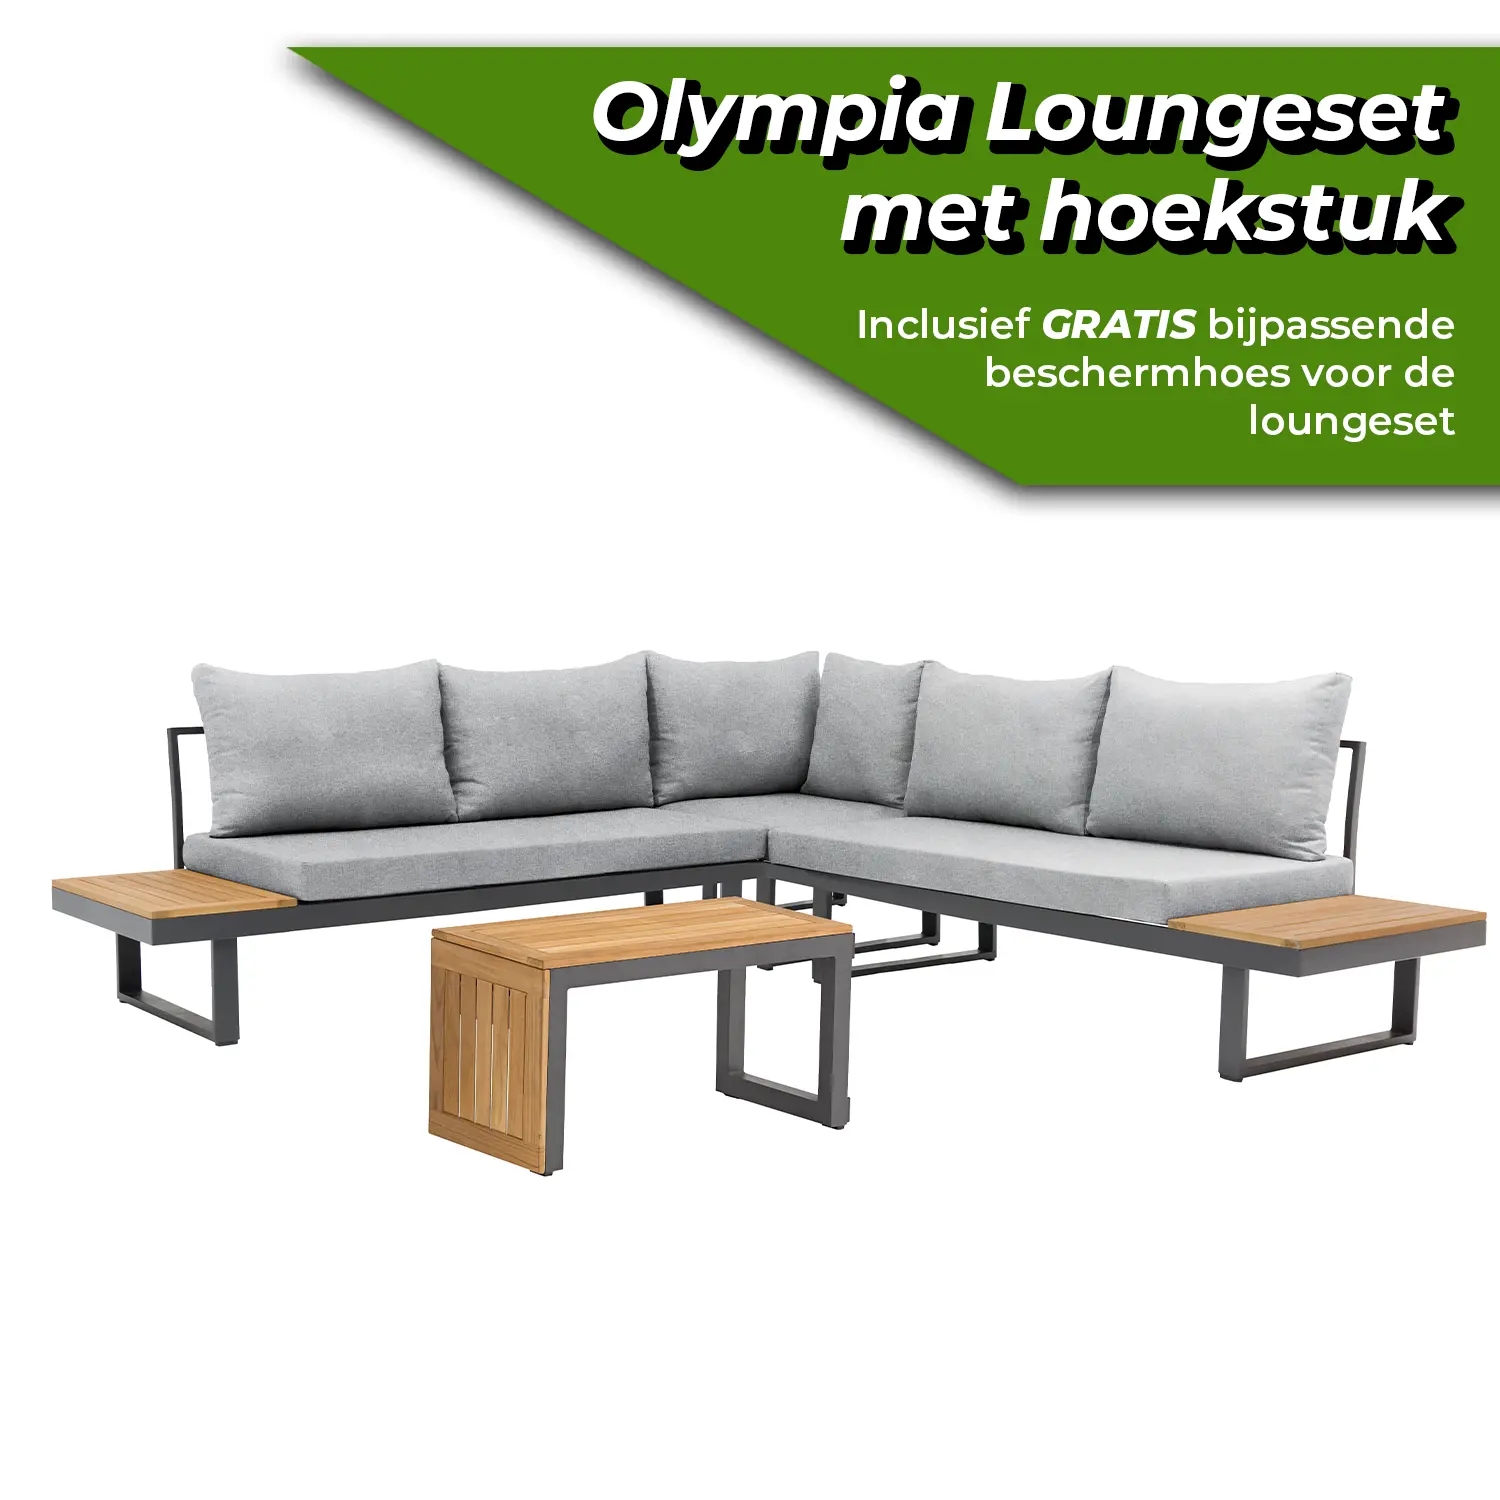 SenS-line Olympia loungeset met hoekstuk